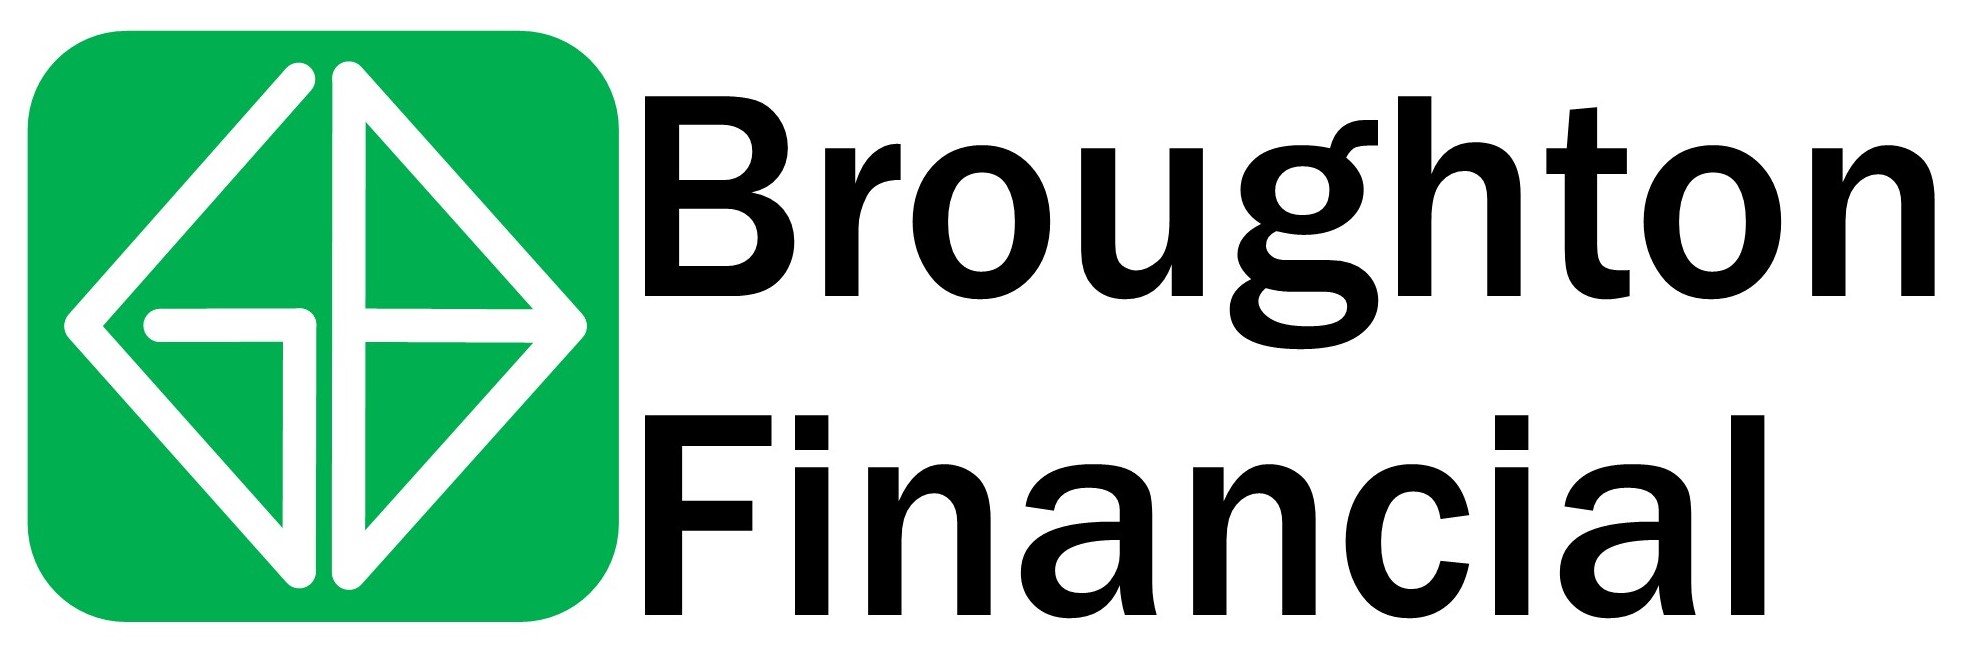 Broughton Financial